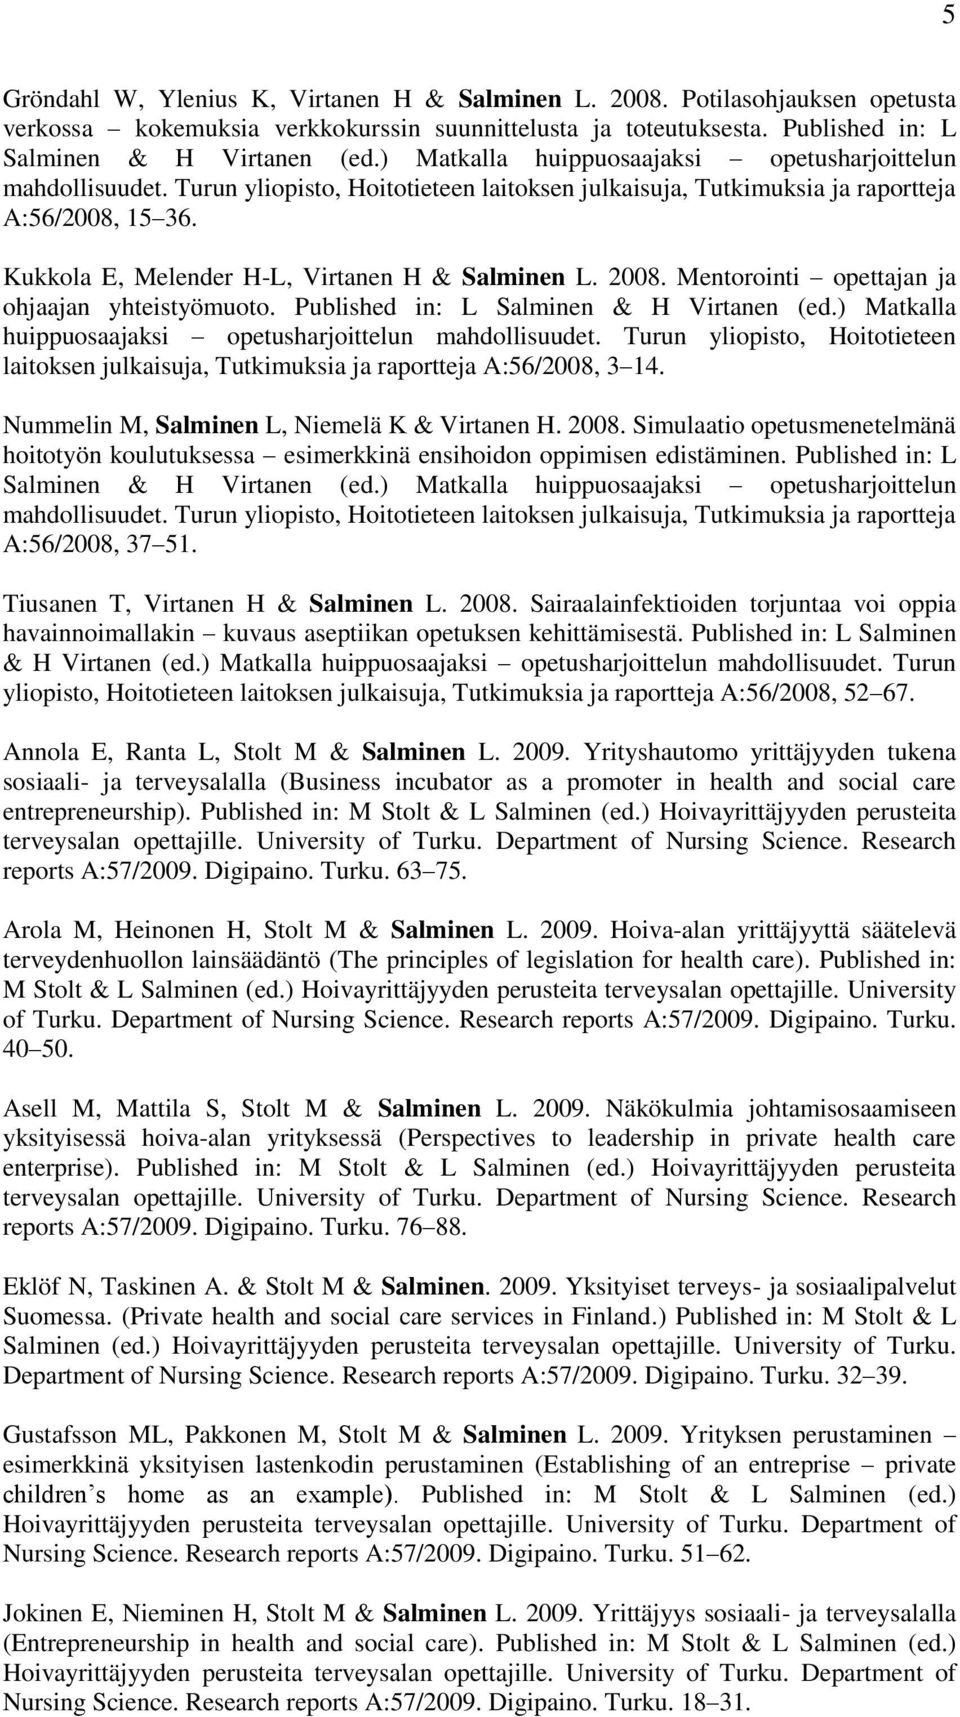 Kukkola E, Melender H-L, Virtanen H & Salminen L. 2008. Mentorointi opettajan ja ohjaajan yhteistyömuoto. Published in: L Salminen & H Virtanen (ed.